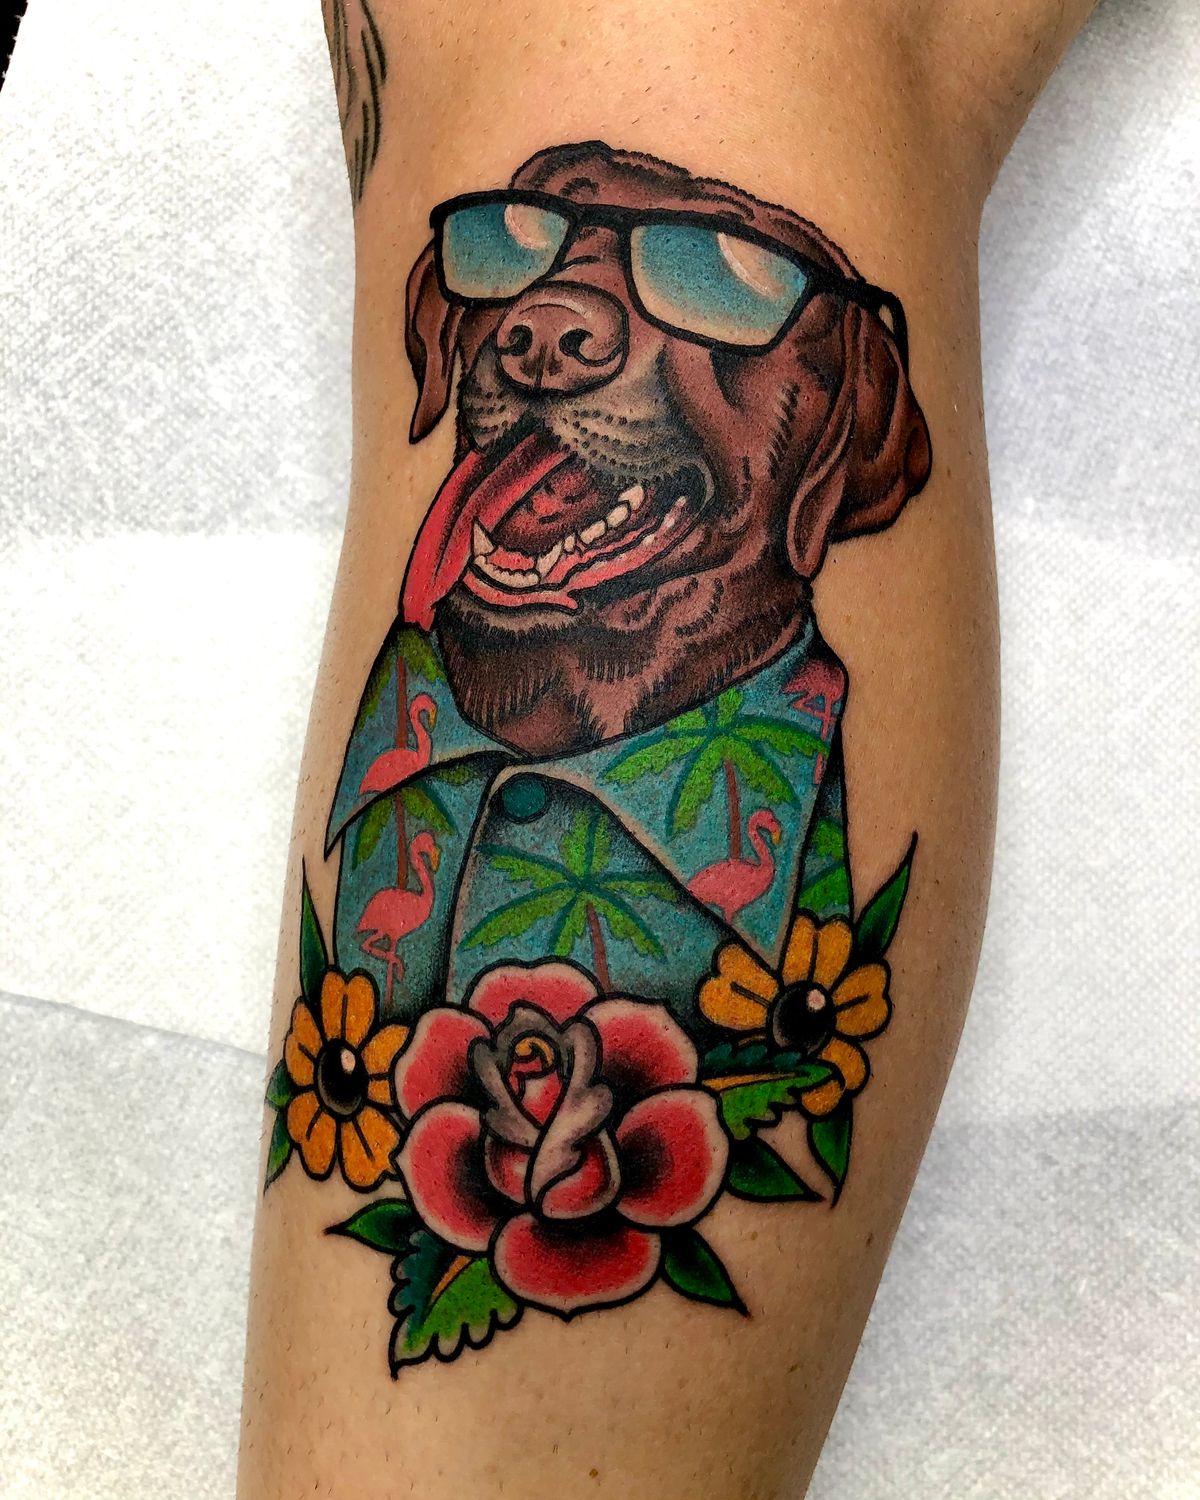 Tattoo by Joe Almquist